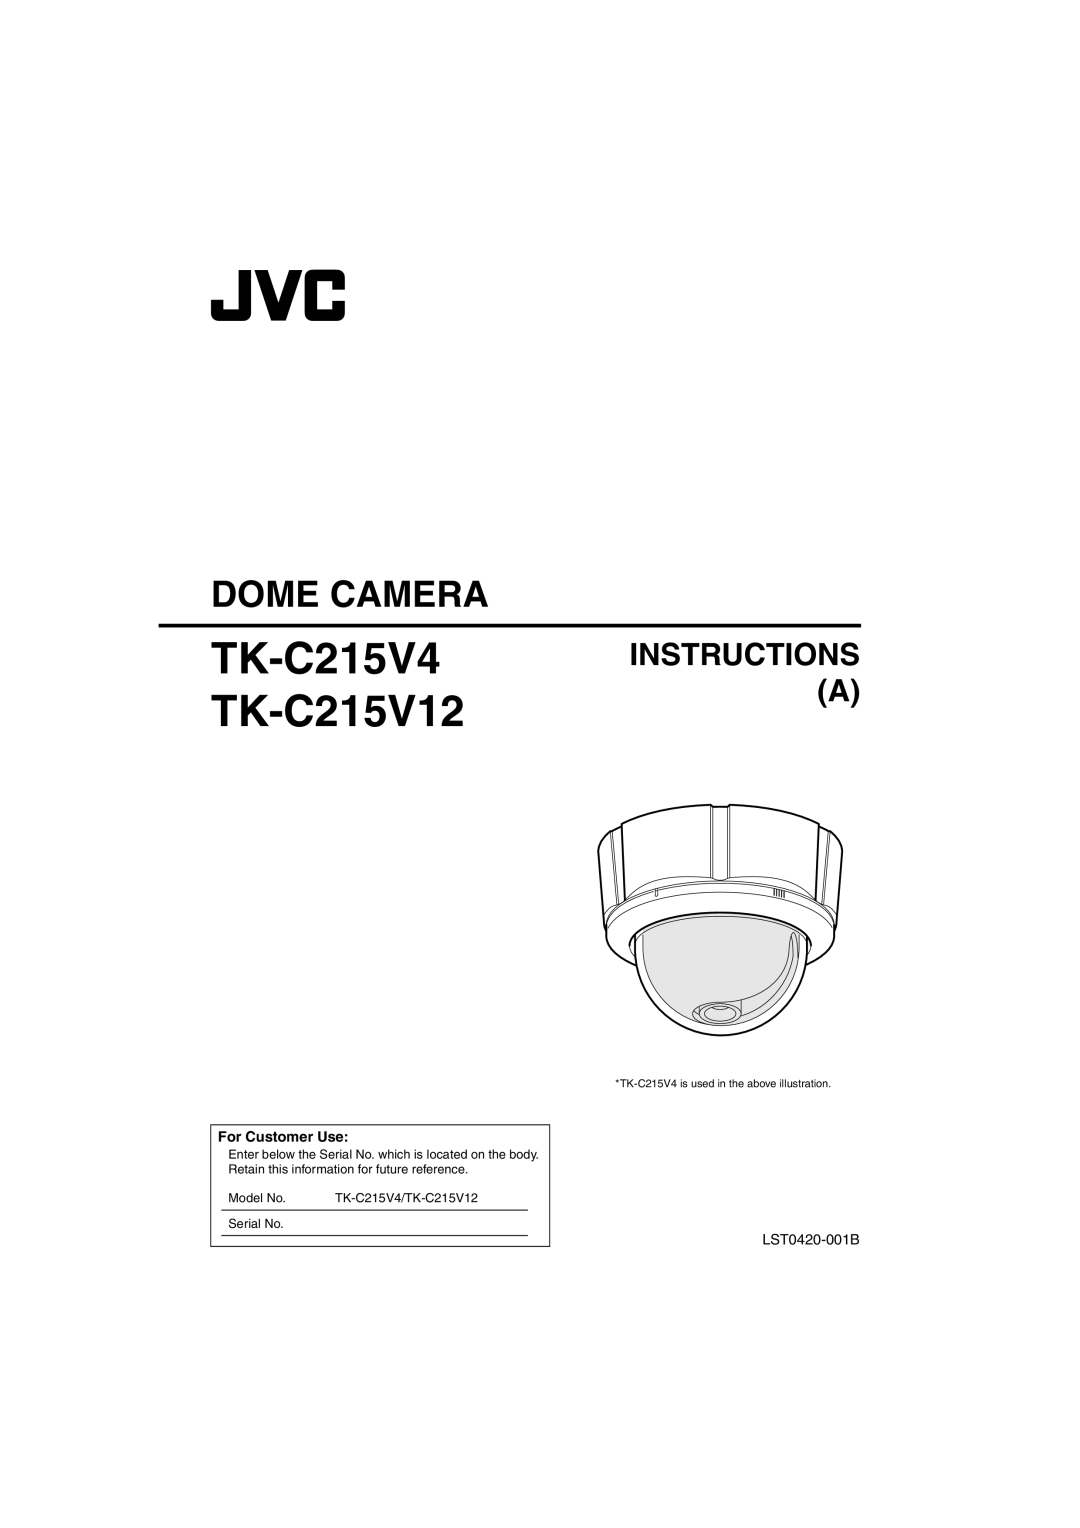 JVC manual TK-C215V4 TK-C215V12, Dome Camera, Instructions A, Model No, TK-C215V4/TK-C215V12, Serial No 